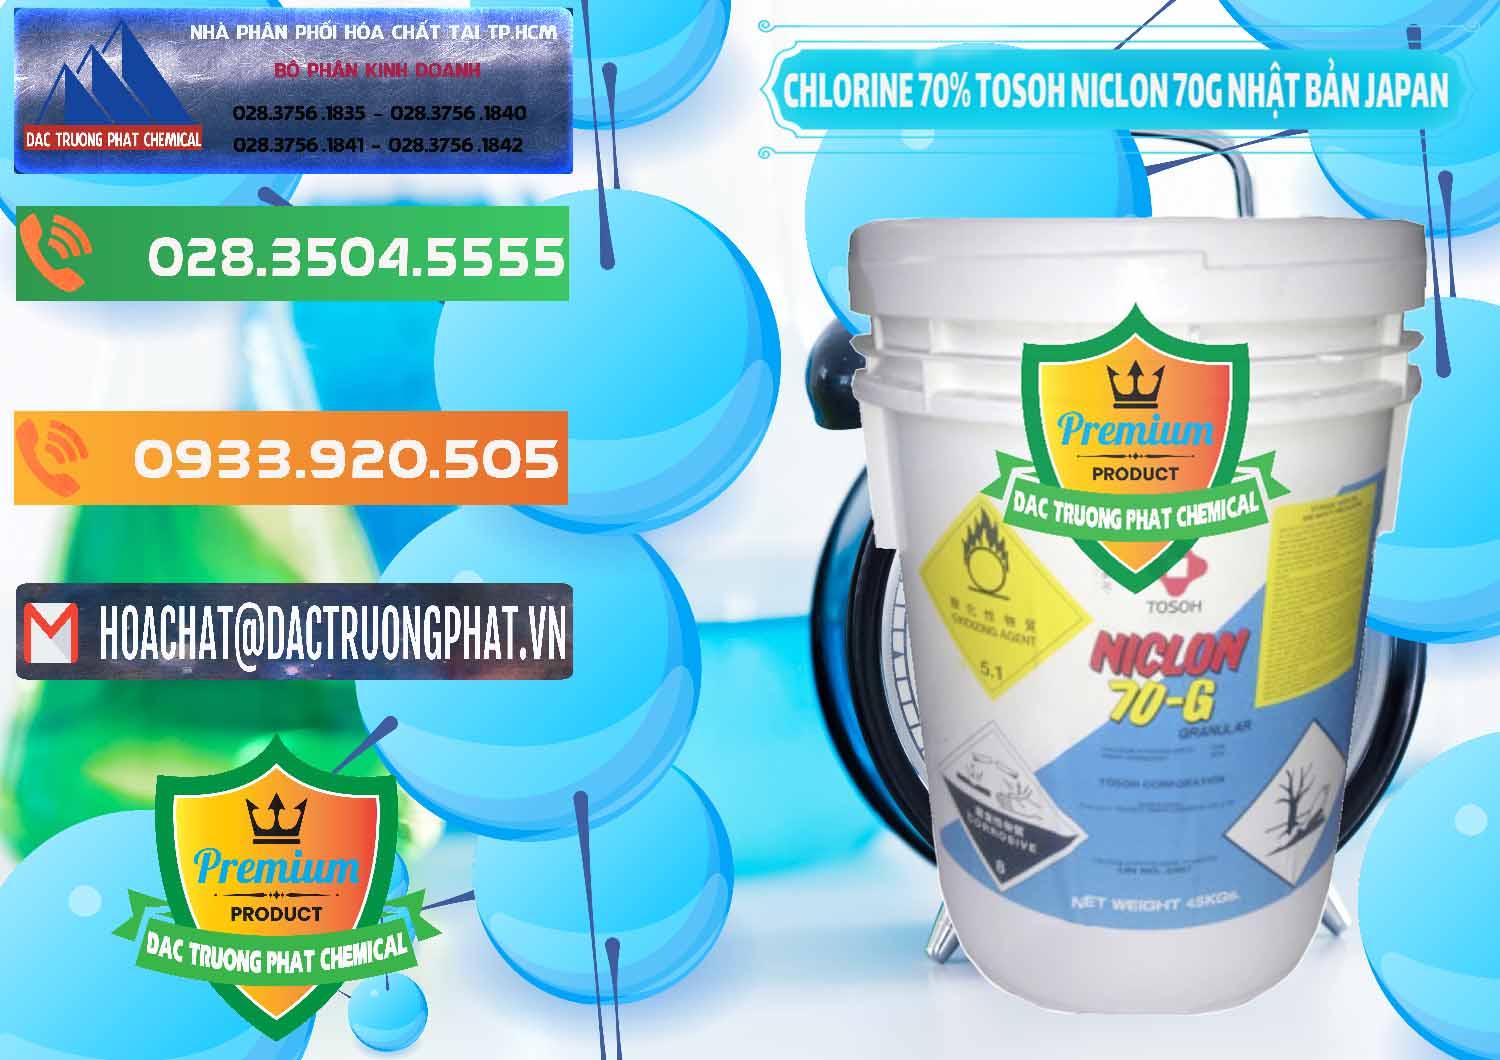 Cty chuyên kinh doanh & bán Clorin – Chlorine 70% Tosoh Niclon 70G Nhật Bản Japan - 0242 - Cty chuyên cung cấp _ nhập khẩu hóa chất tại TP.HCM - hoachatxulynuoc.com.vn